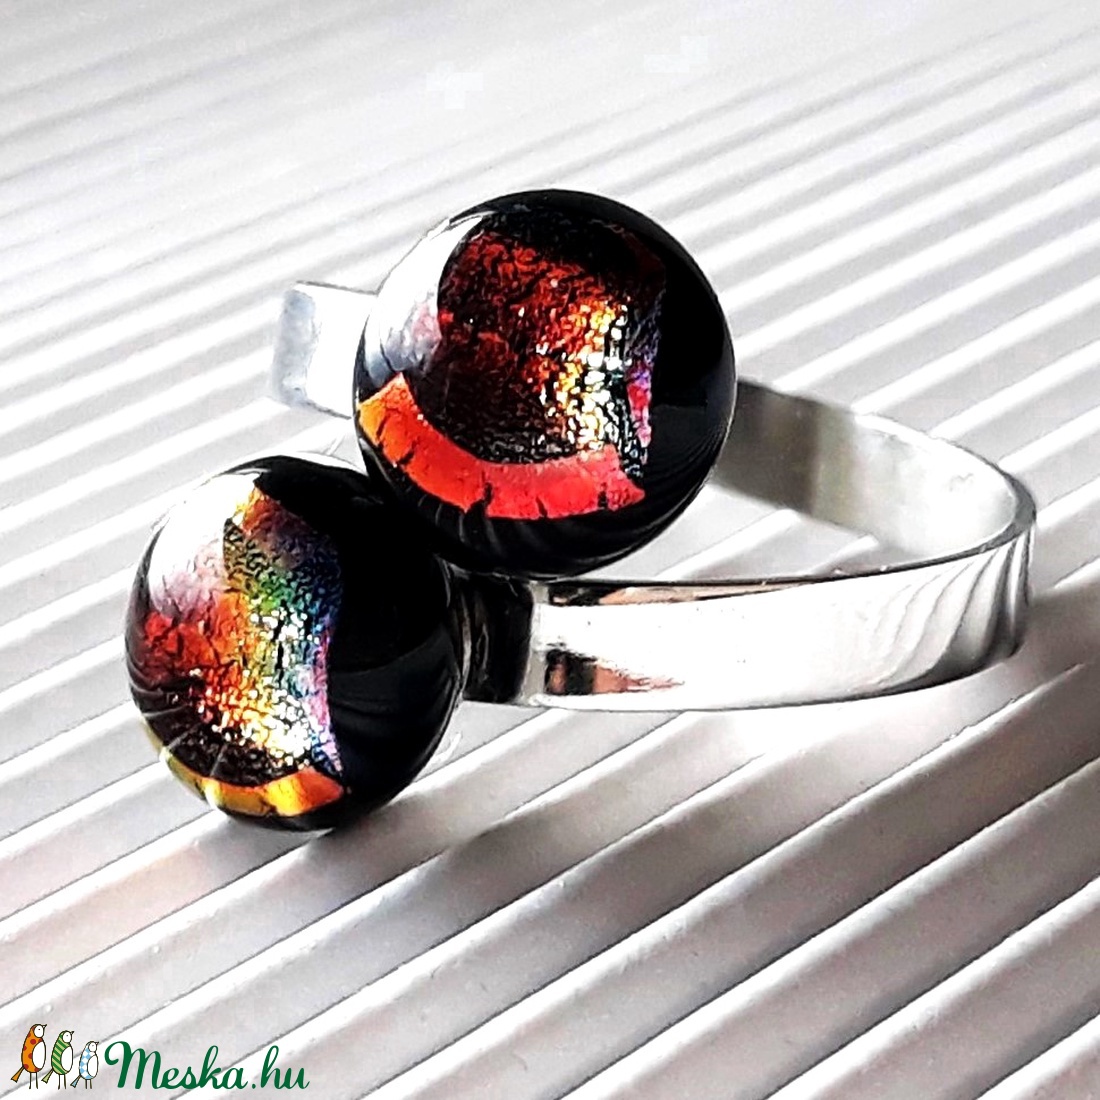 Ragyogó csillagpor dupla bogyós üveg gyűrű nemesacél alapon, trendi, design üvegékszer - ékszer - gyűrű - statement gyűrű - Meska.hu